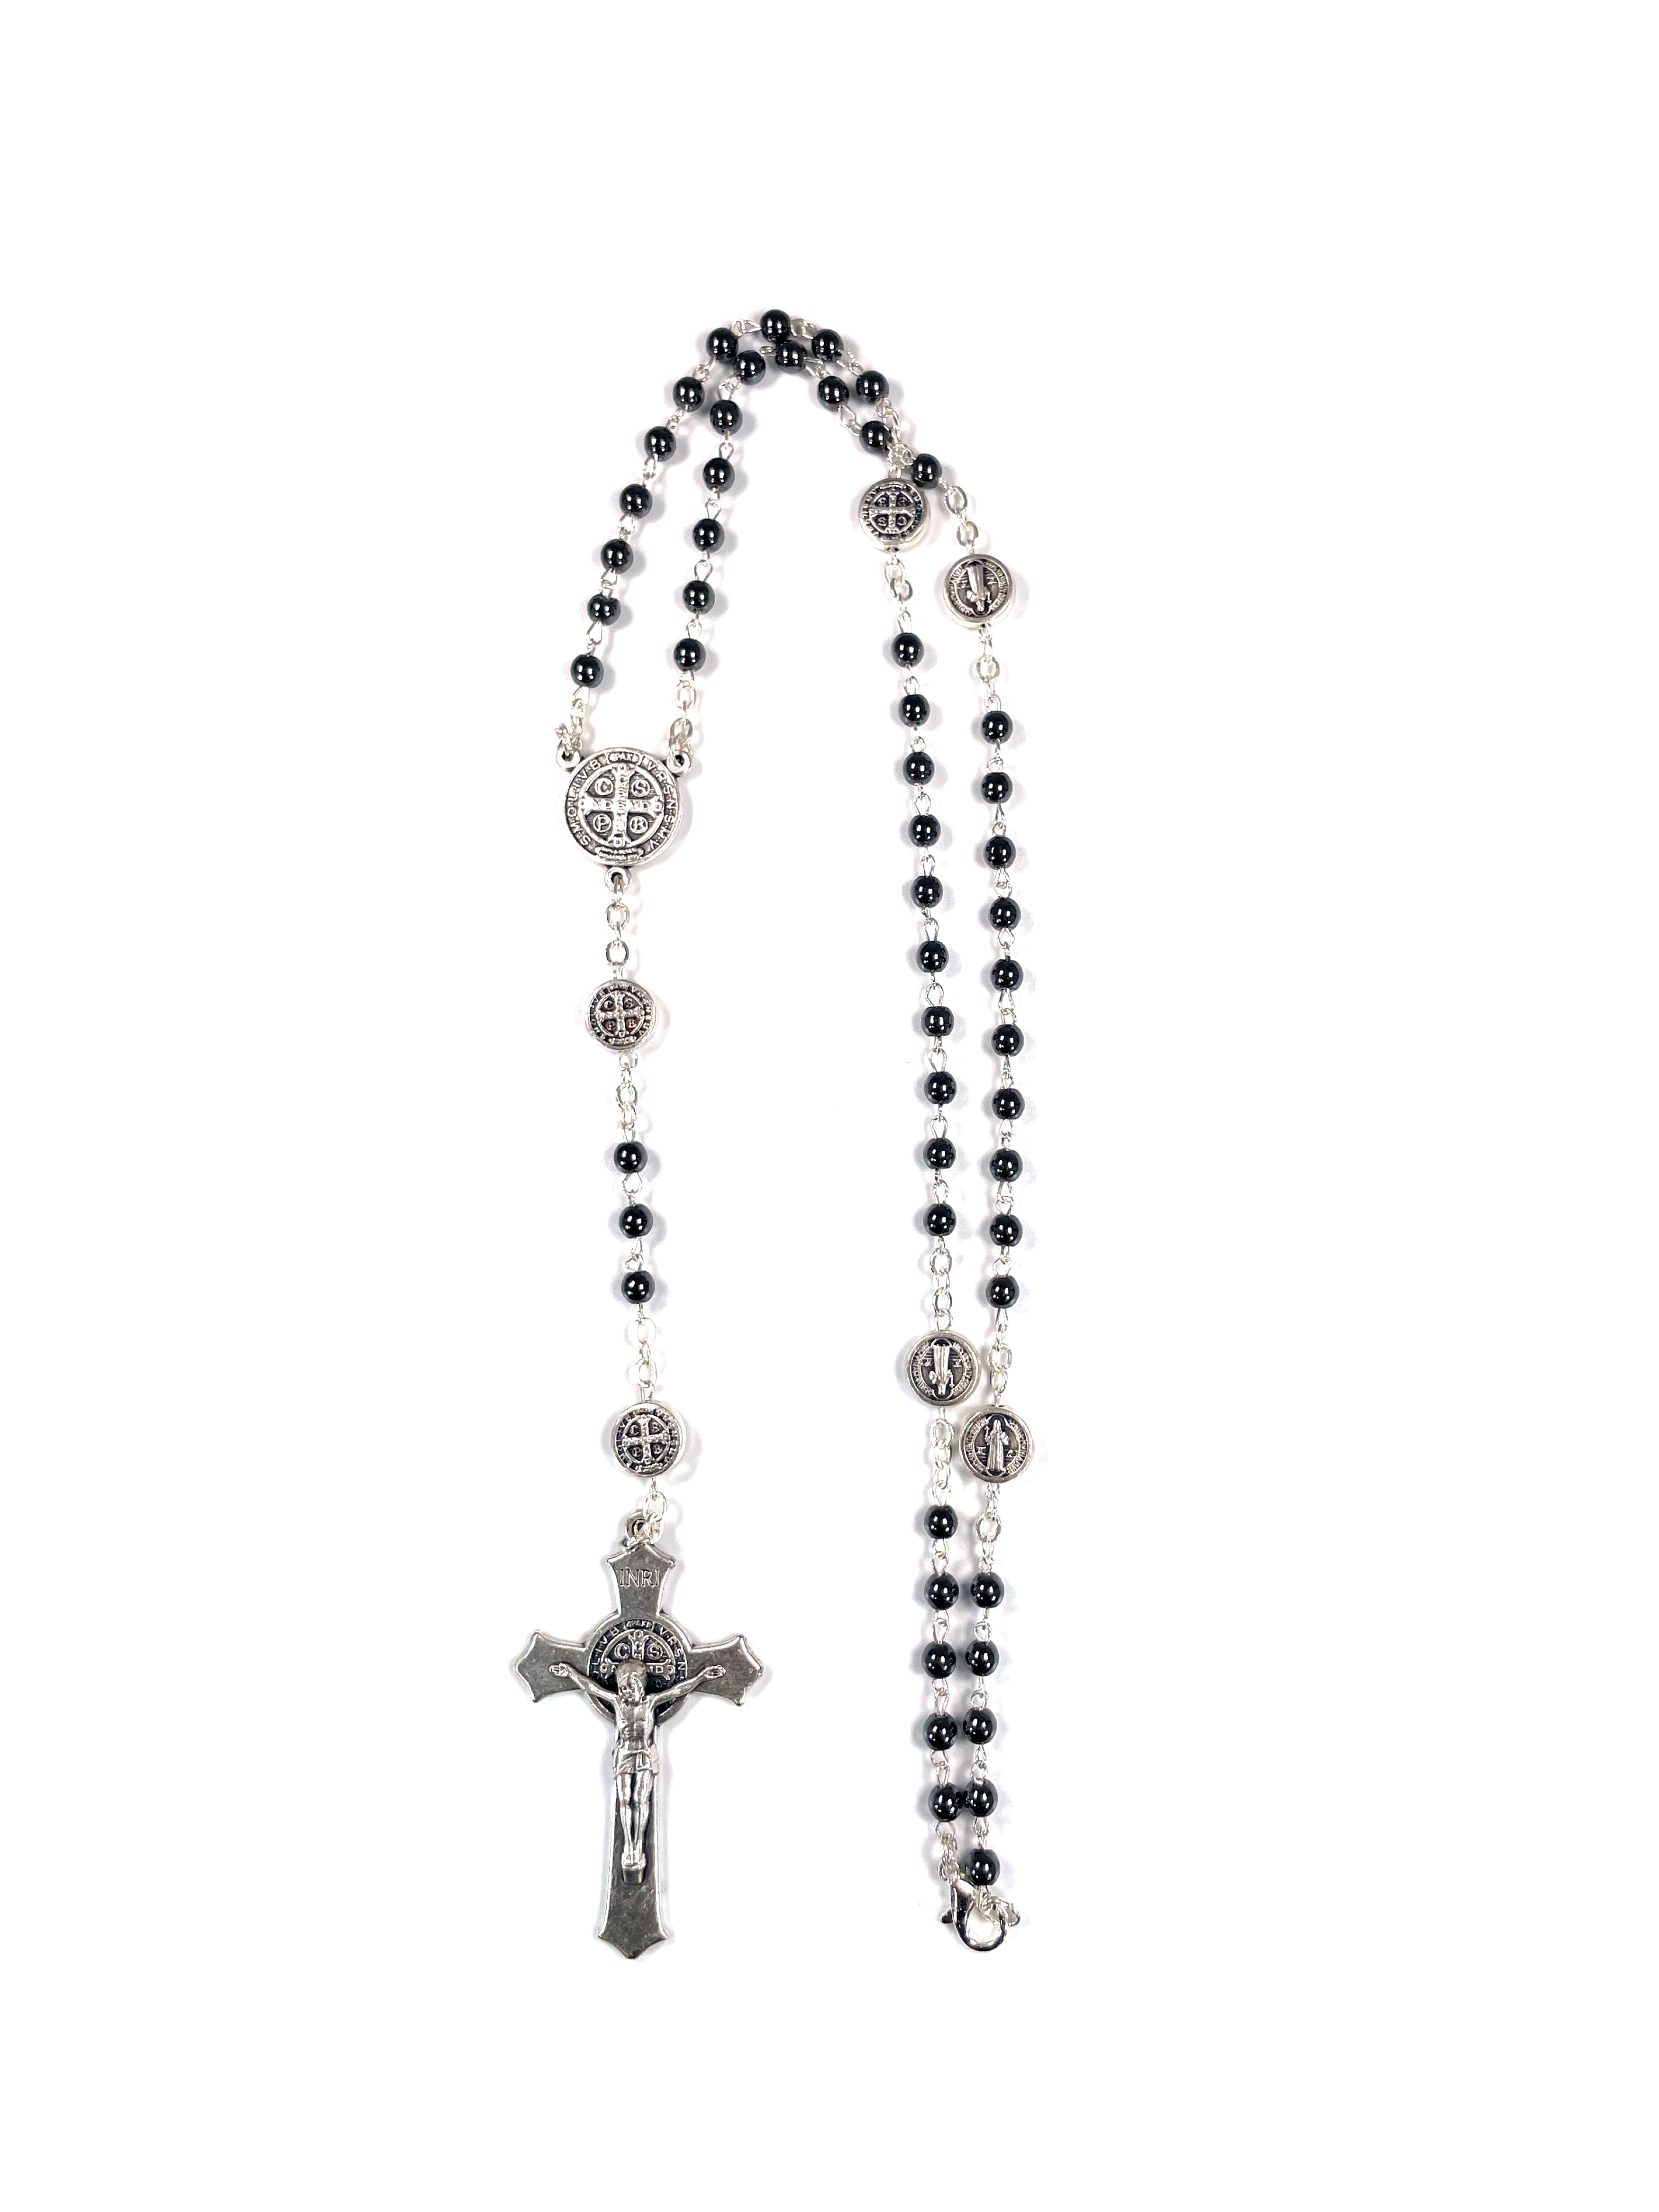 Saint Benedict Hematite Rosary